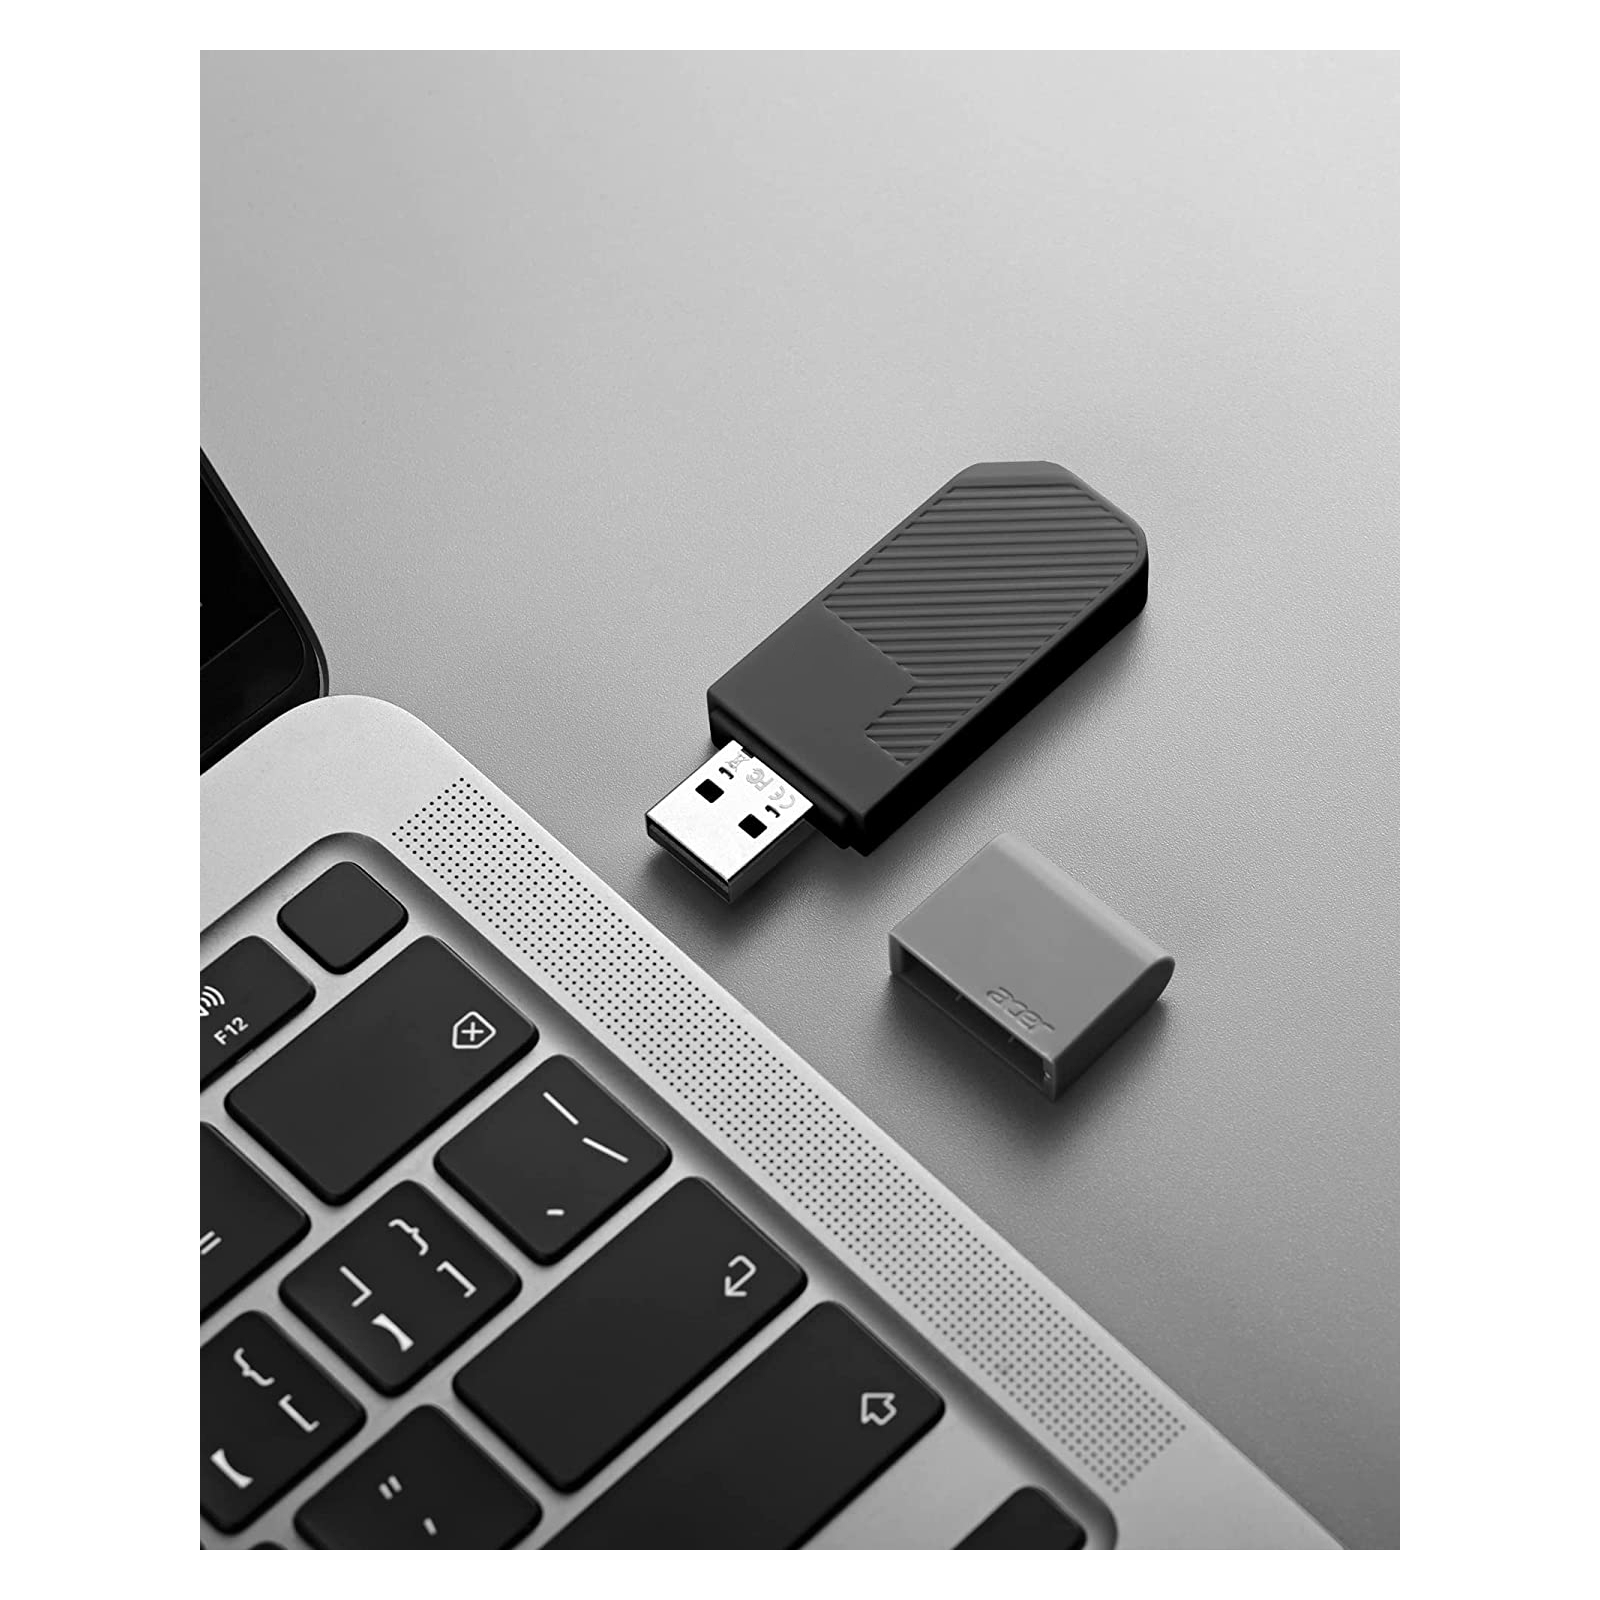 USB флеш накопитель Acer 128GB UP200 Black USB 2.0 (BL.9BWWA.512) изображение 3